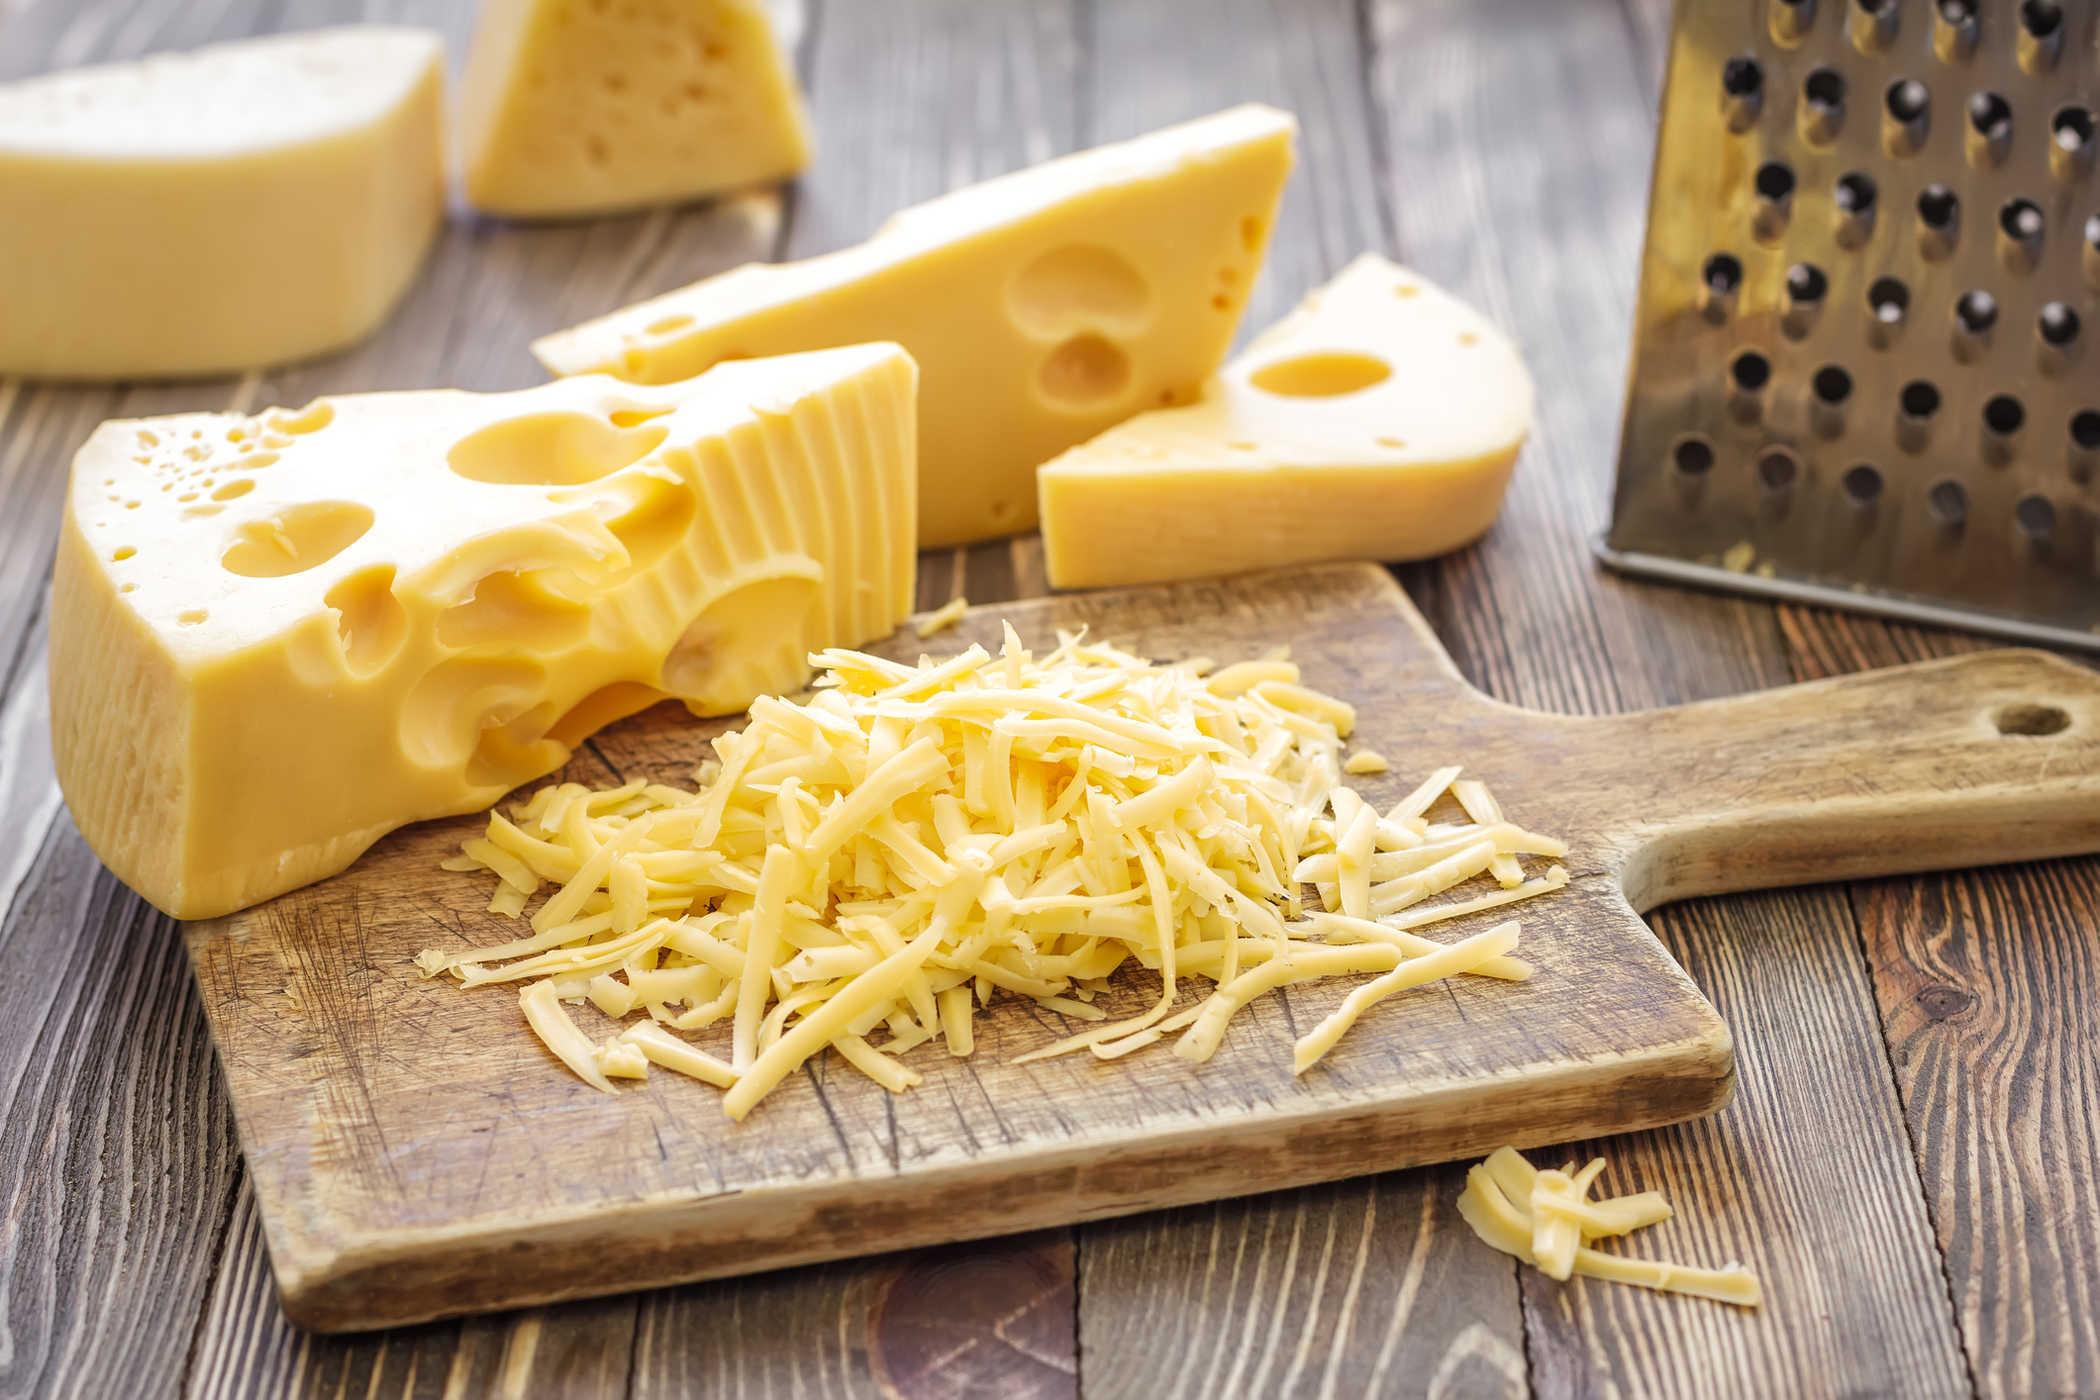 Käse essen während der Schwangerschaft: Was ist sicher, was gefährlich?